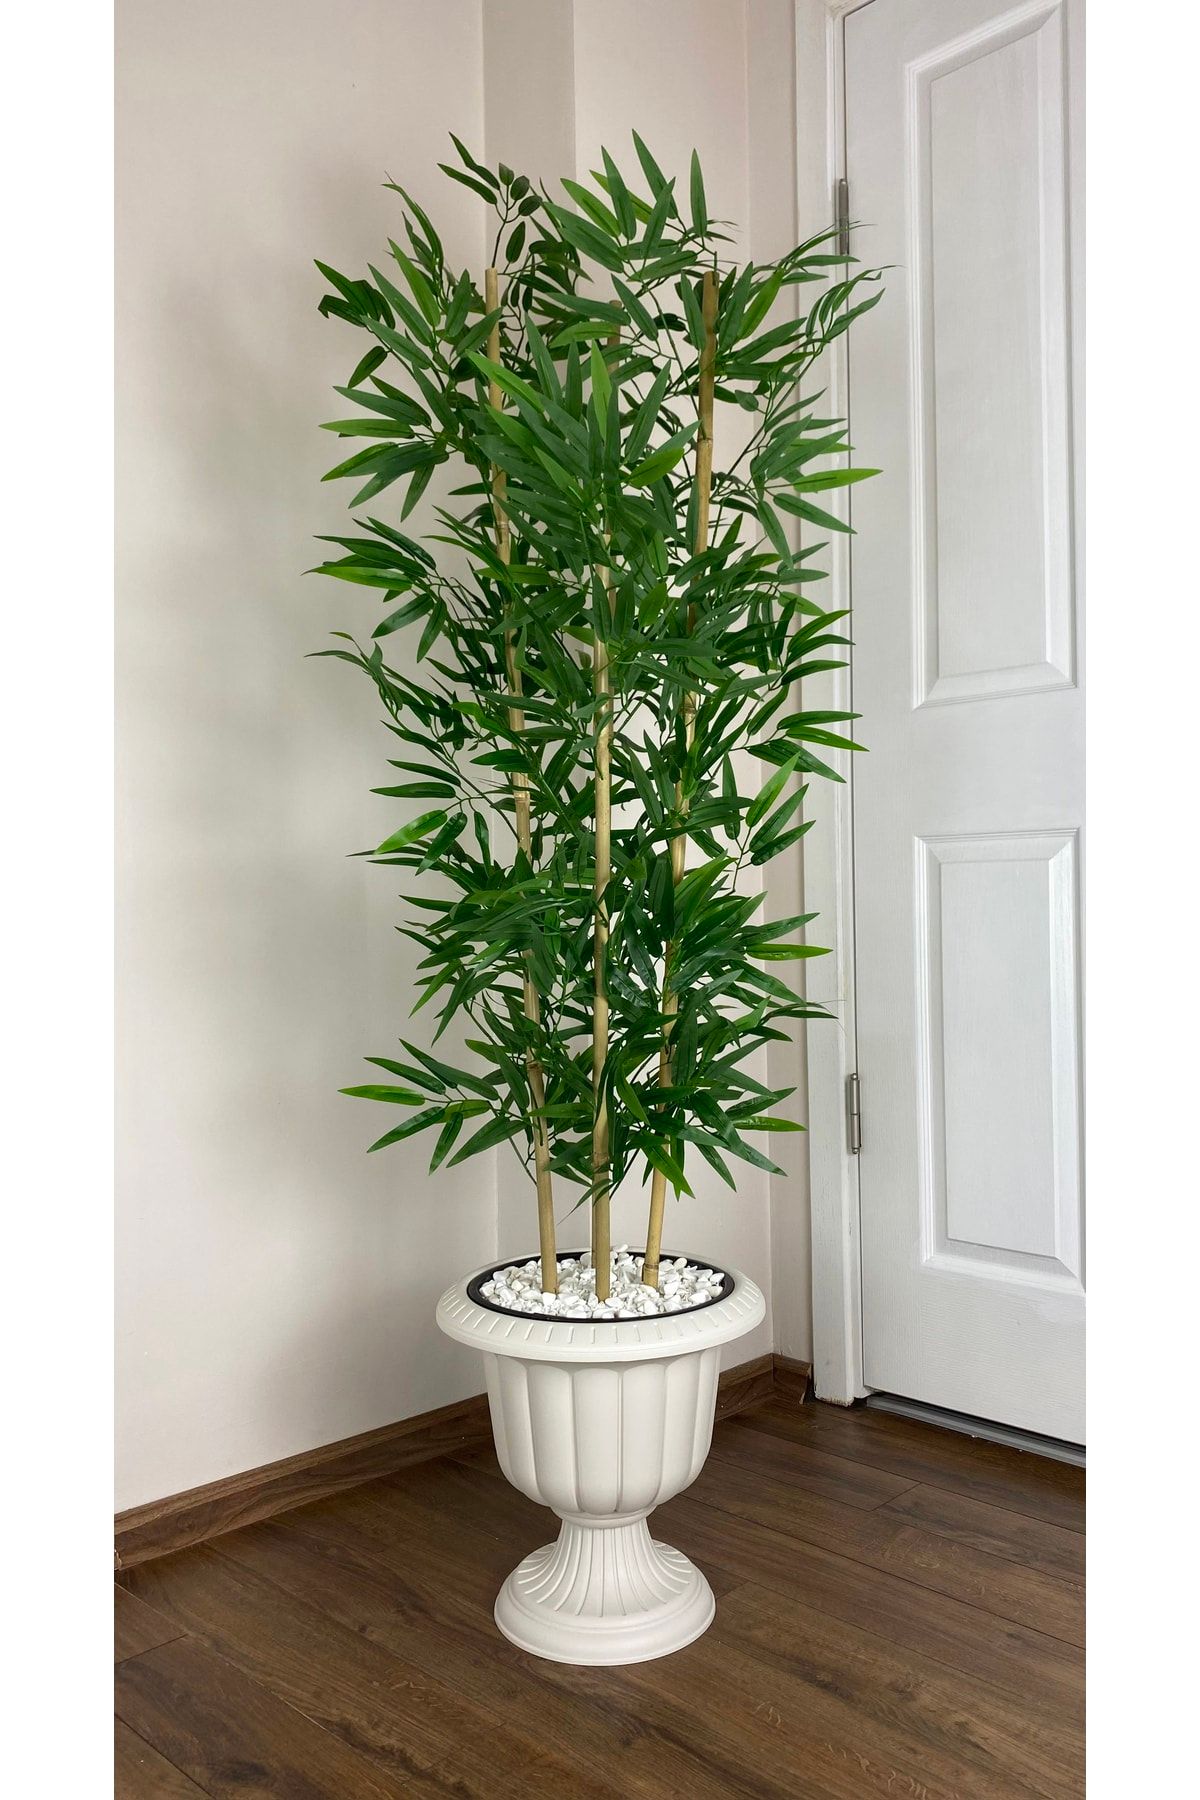 BİÇİÇEK Yapay Bambu Ağacı 170cm Yoğun Yapraklı Kırık Beyaz Renk Nergis Saksıda